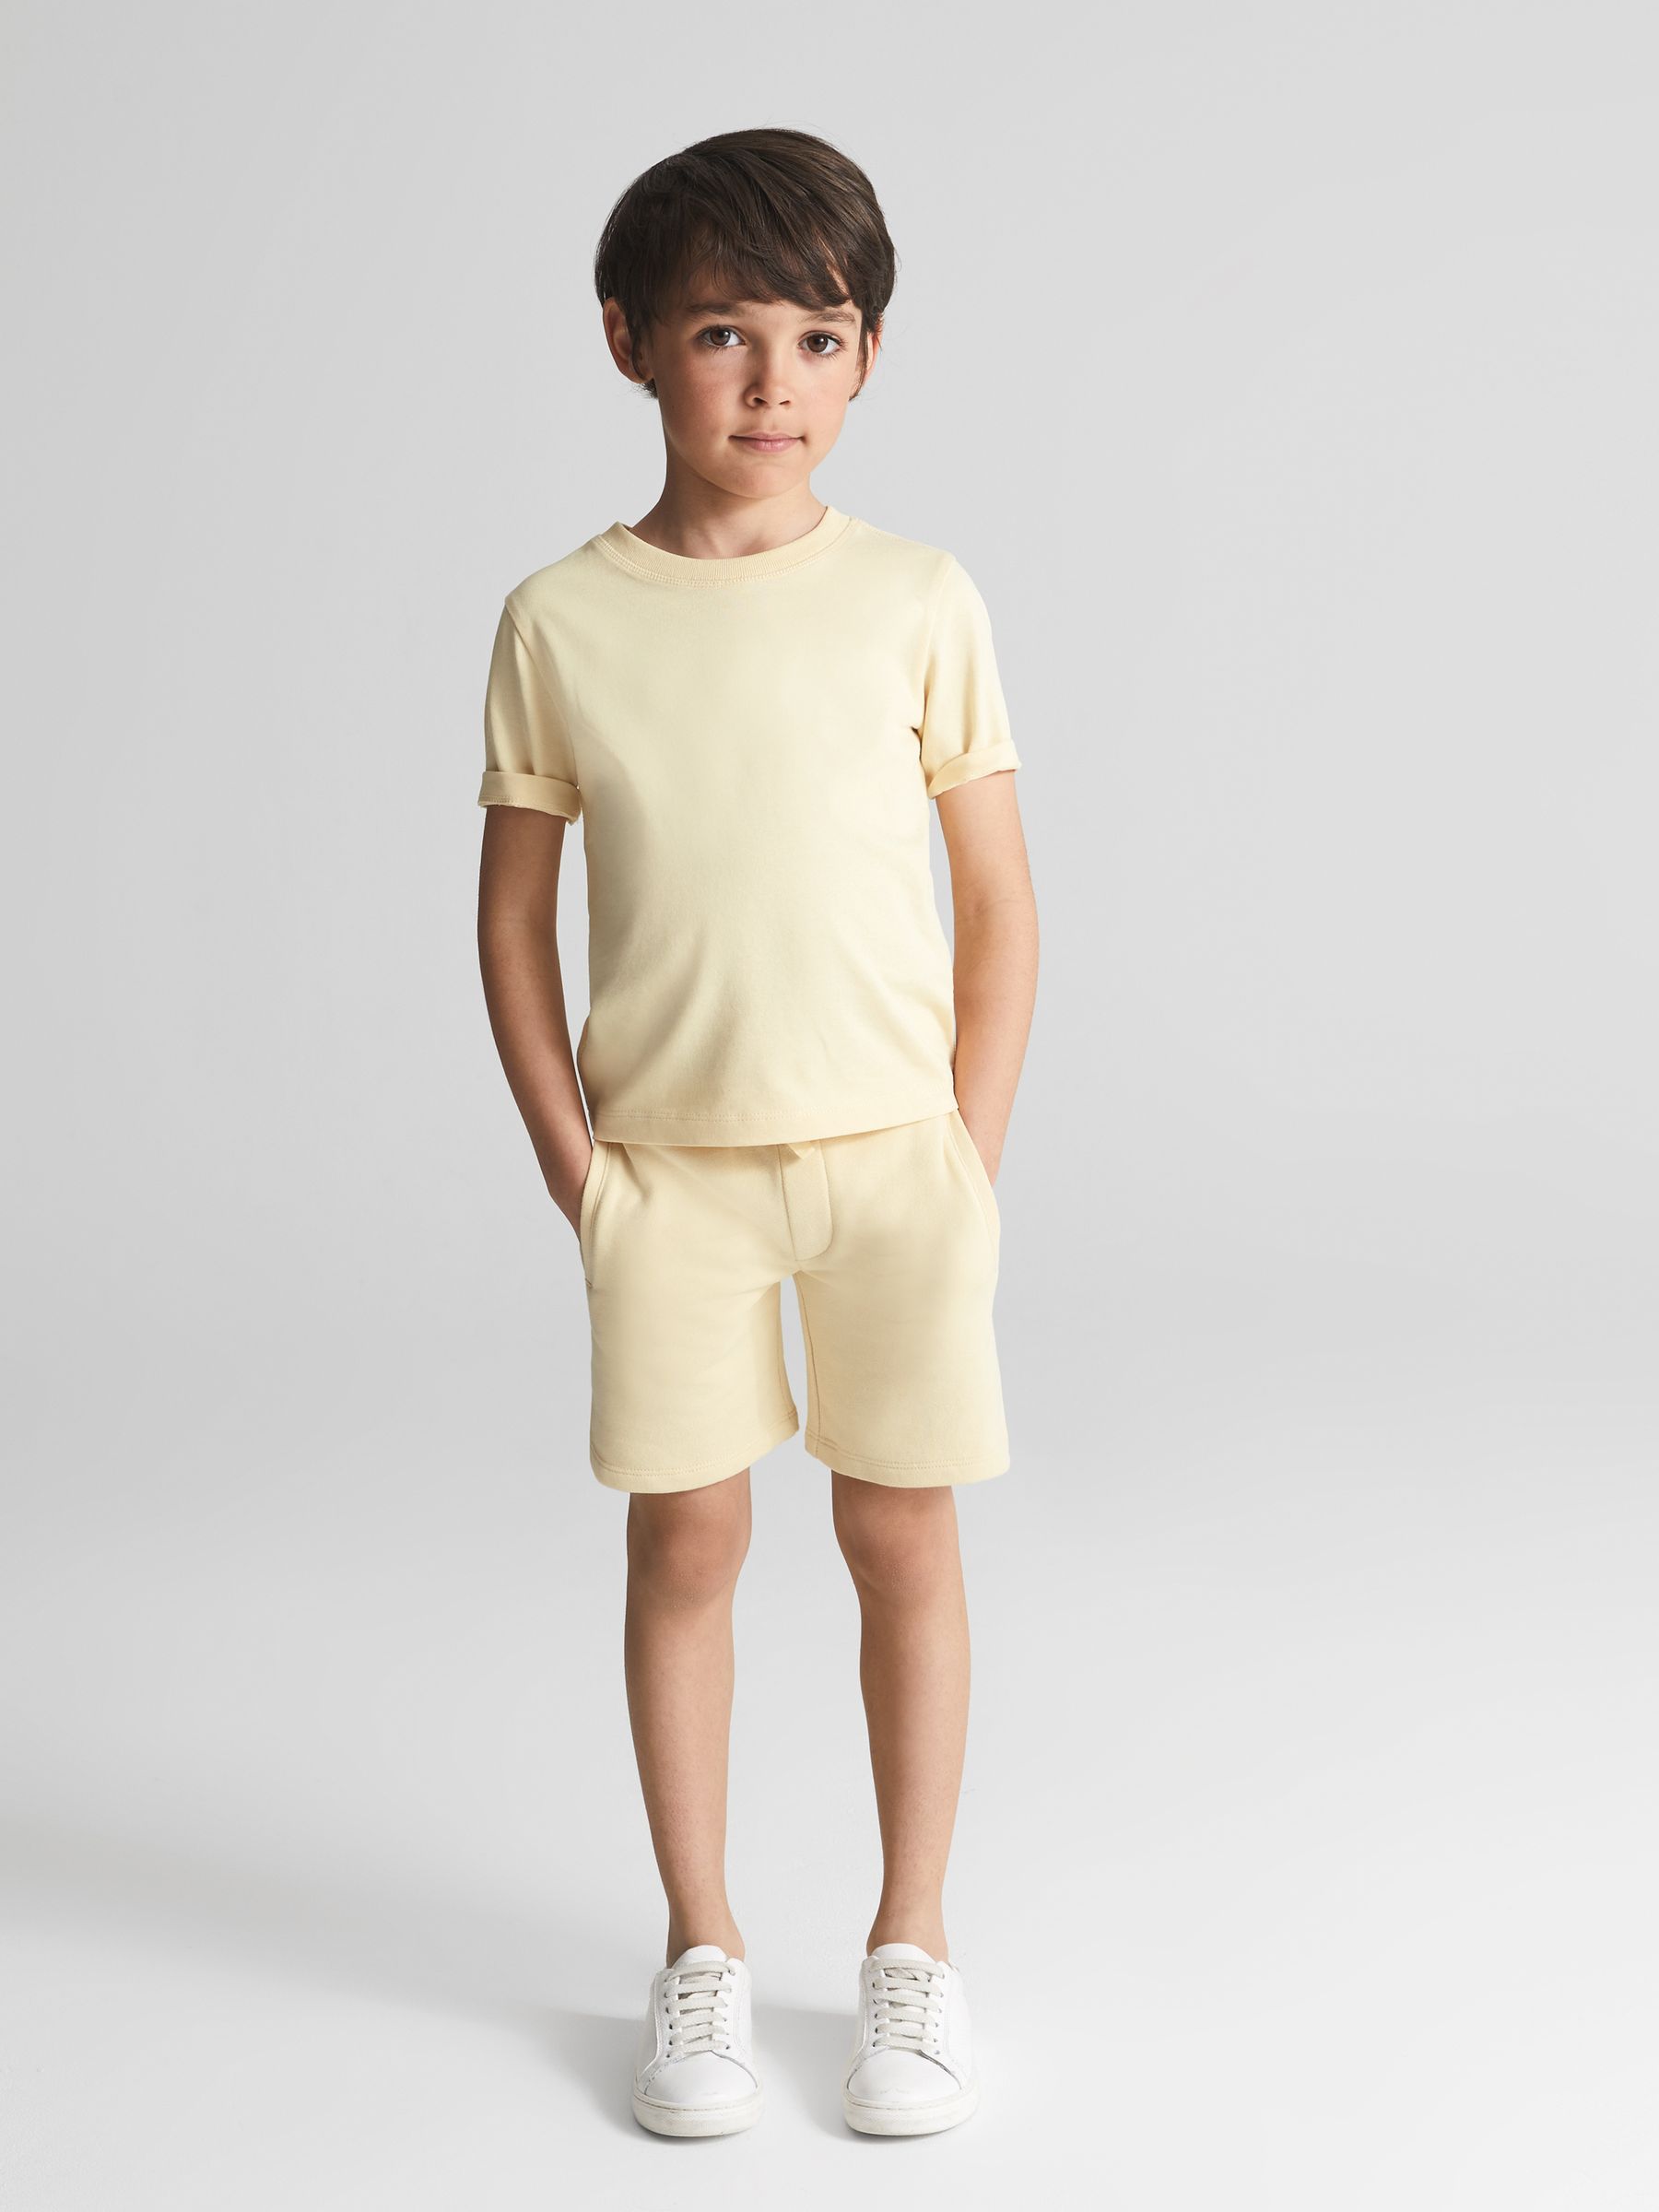 Reiss Tate Junior Garment Dye Relaxed Fit T-Shirt - REISS